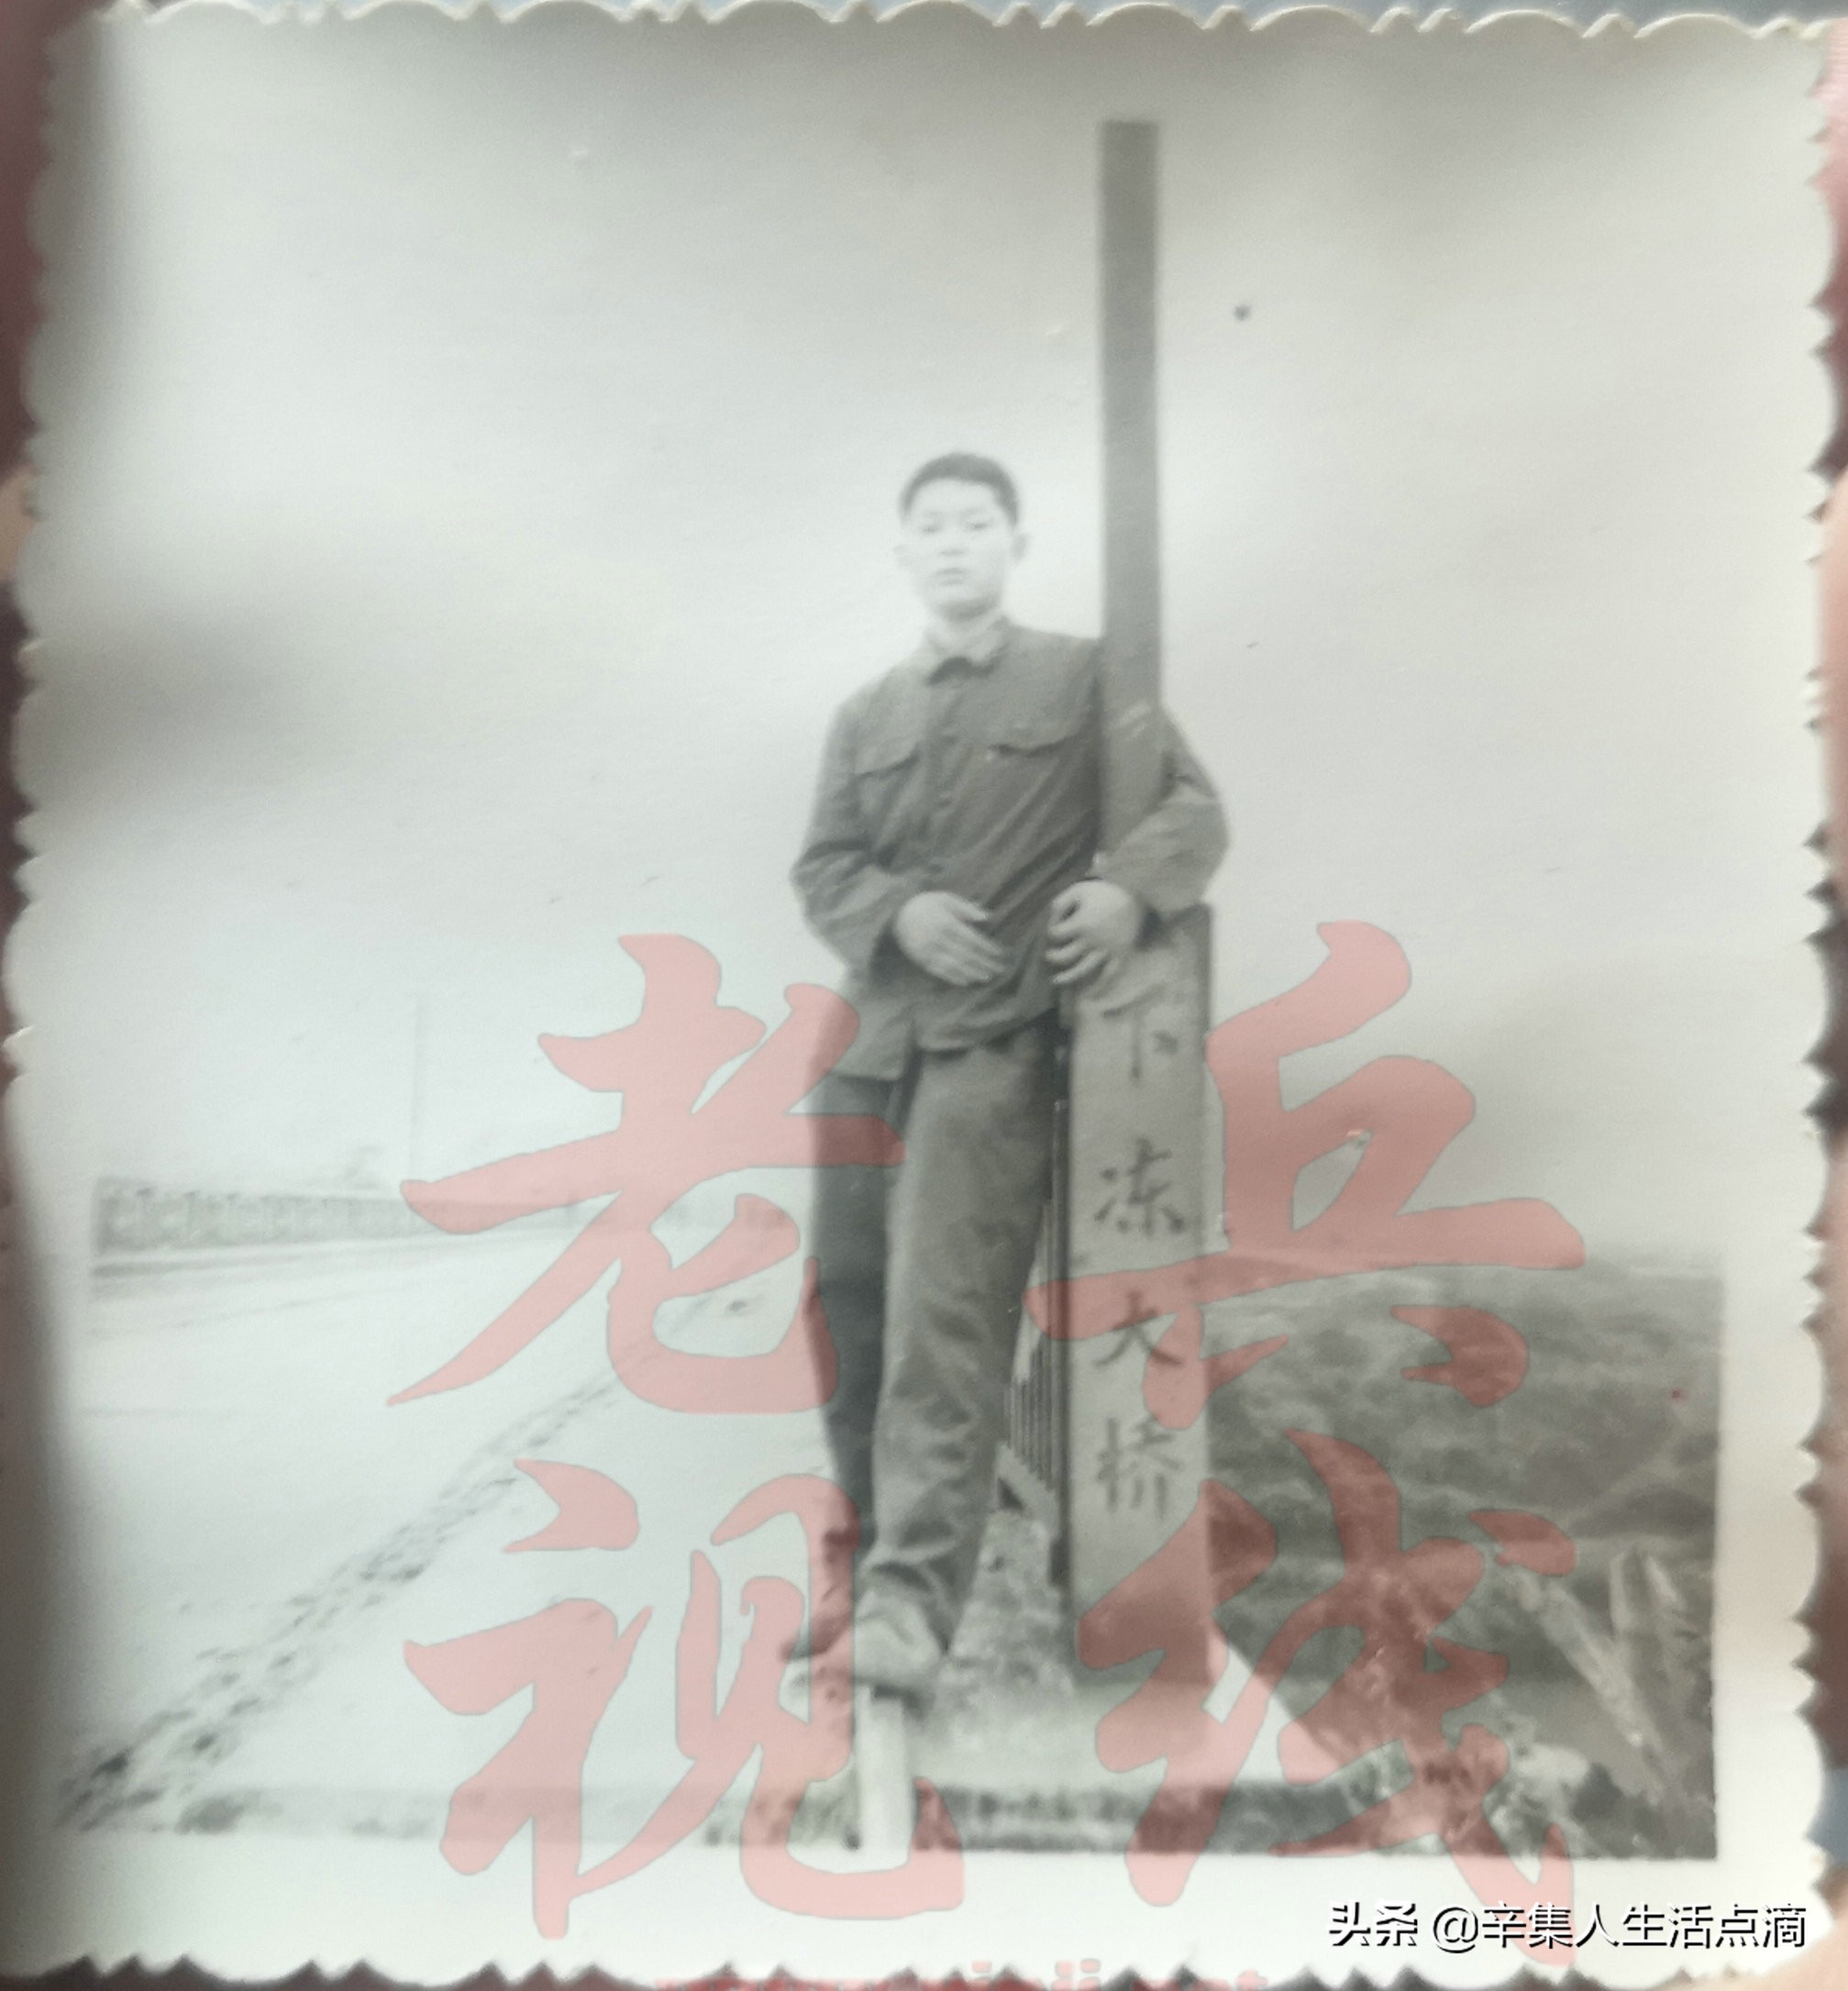 “1985广西边境参战期间”来之不易的几张老照片